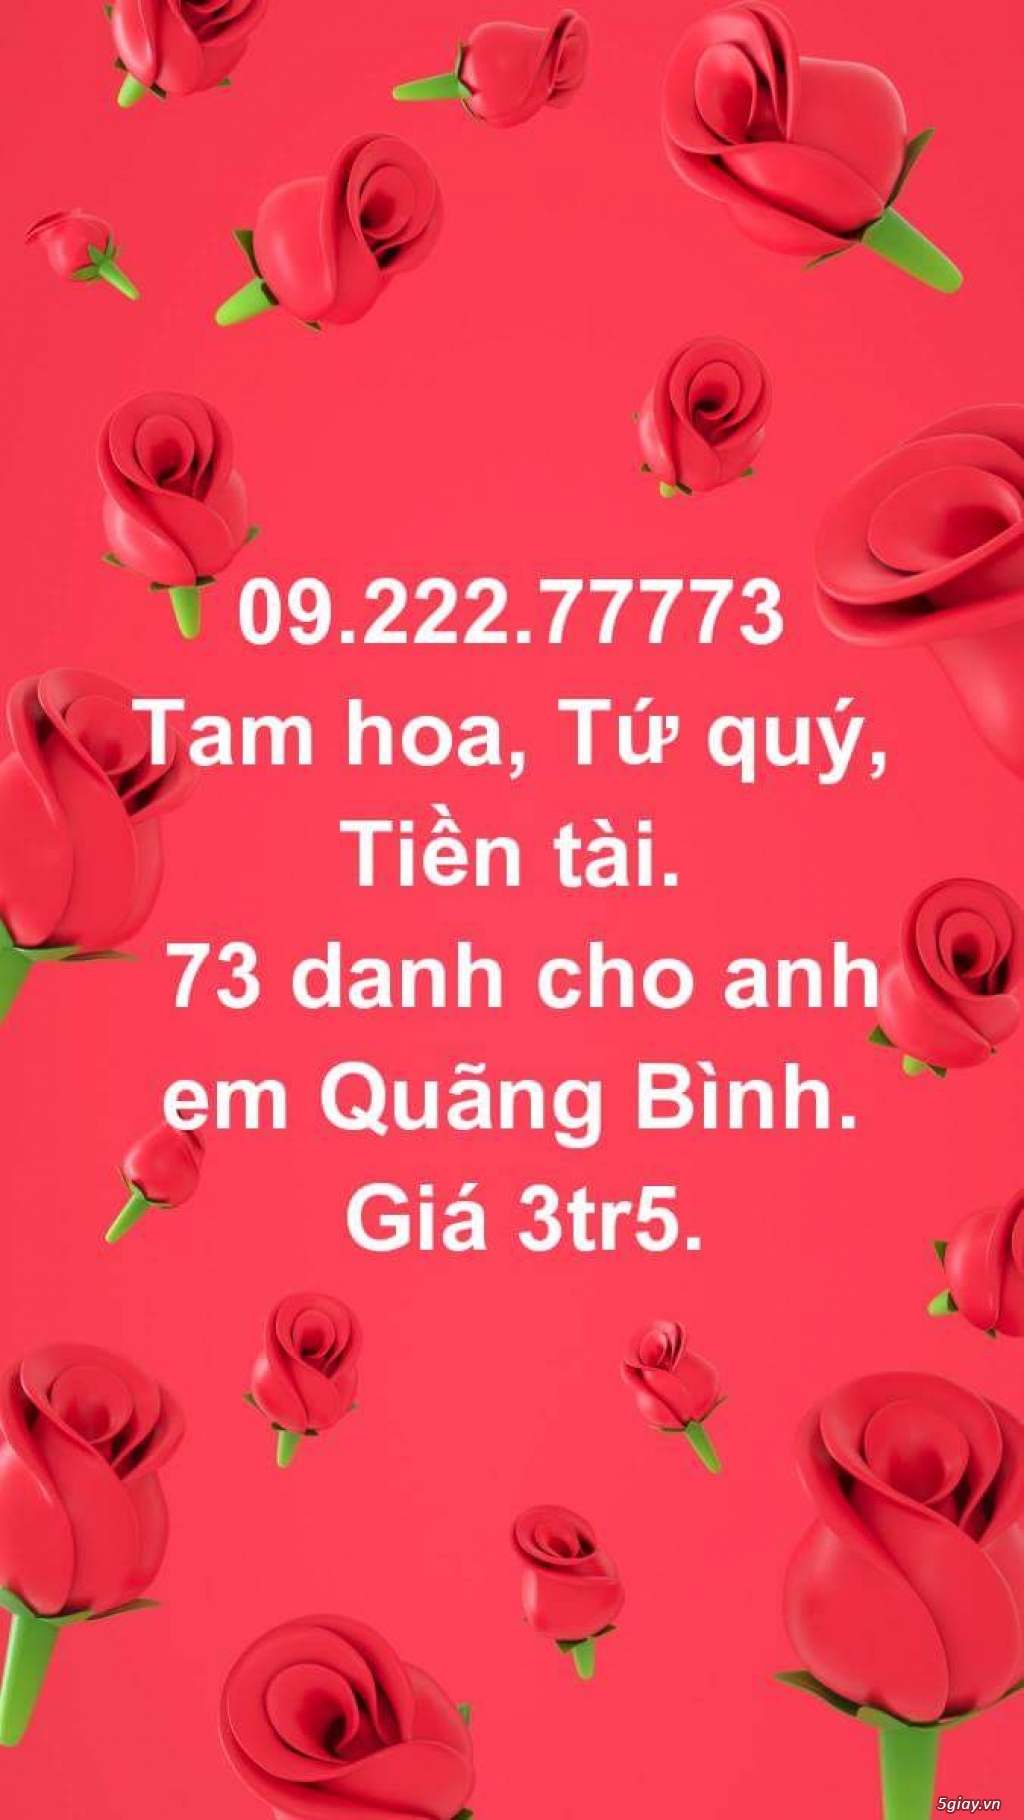 Cần bán nhiều sim Vietnam Mobile rất đẹp: 056.79.79.796- 056.89.89.896 - 1